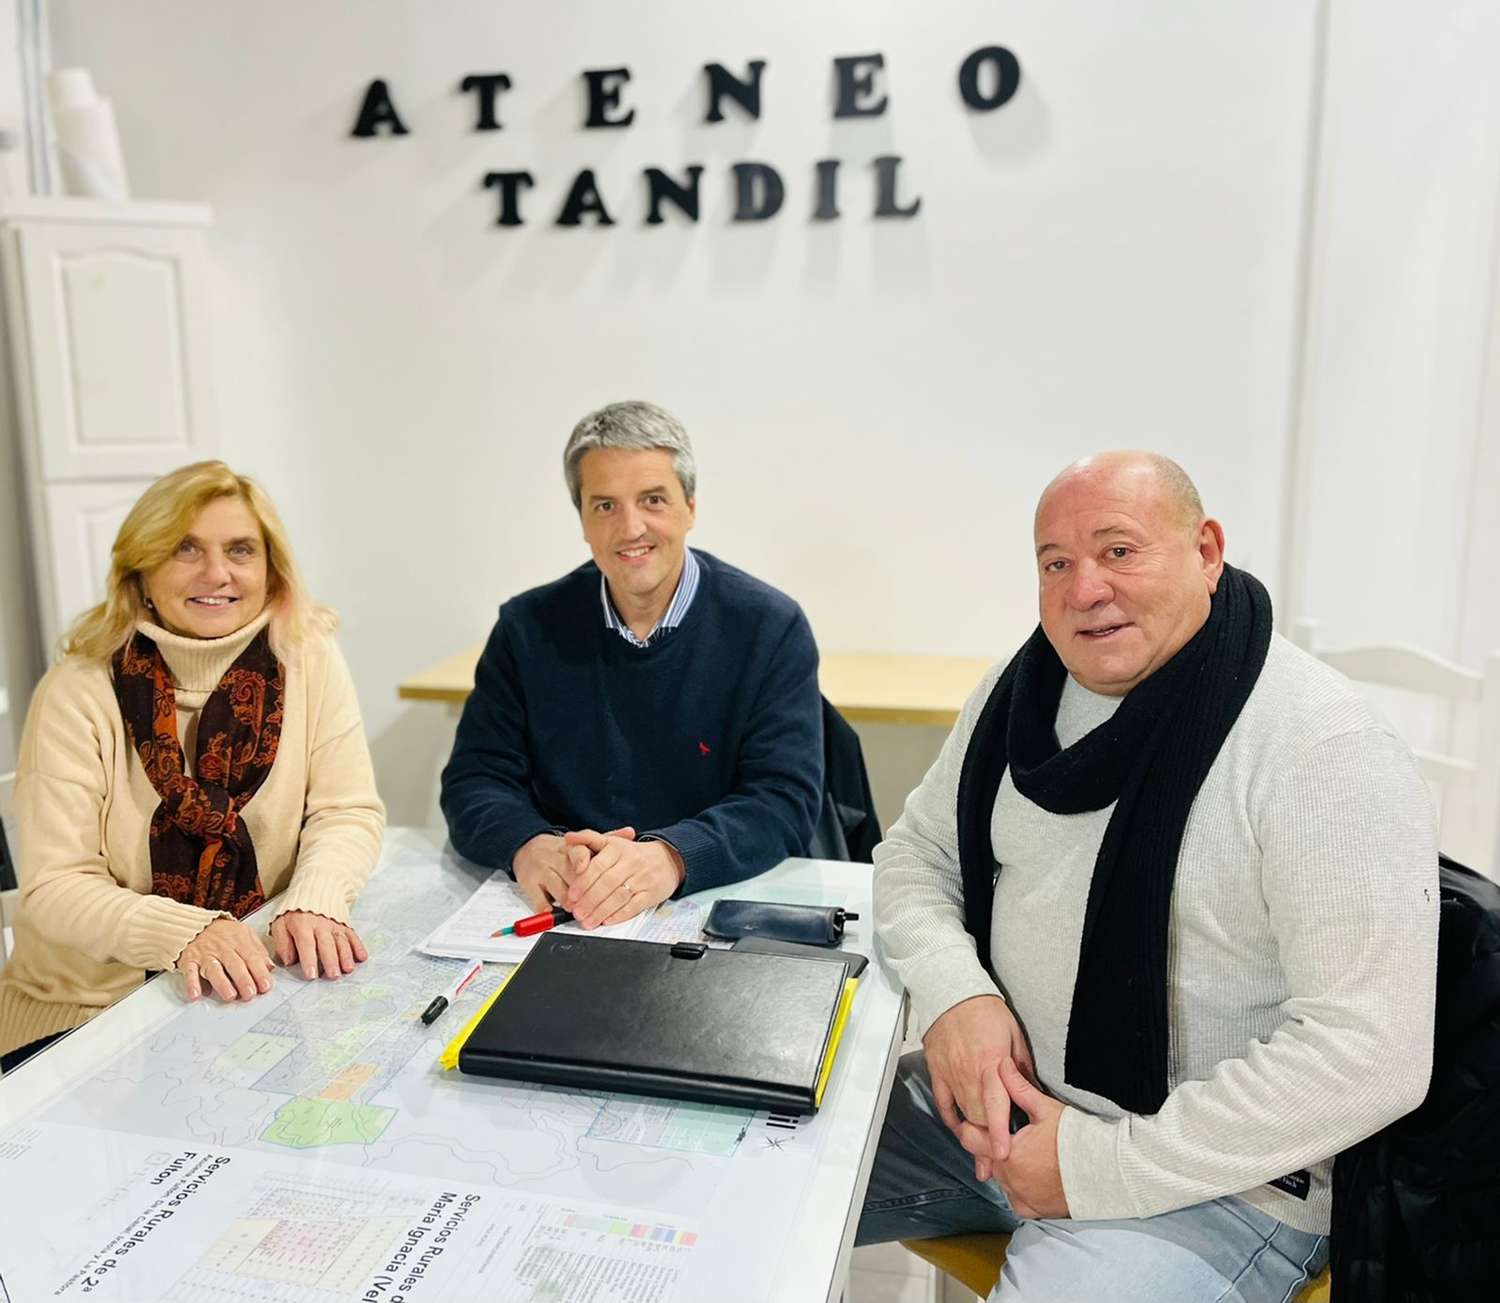 El Ateneo Tandil pone el foco en la ciudad del futuro